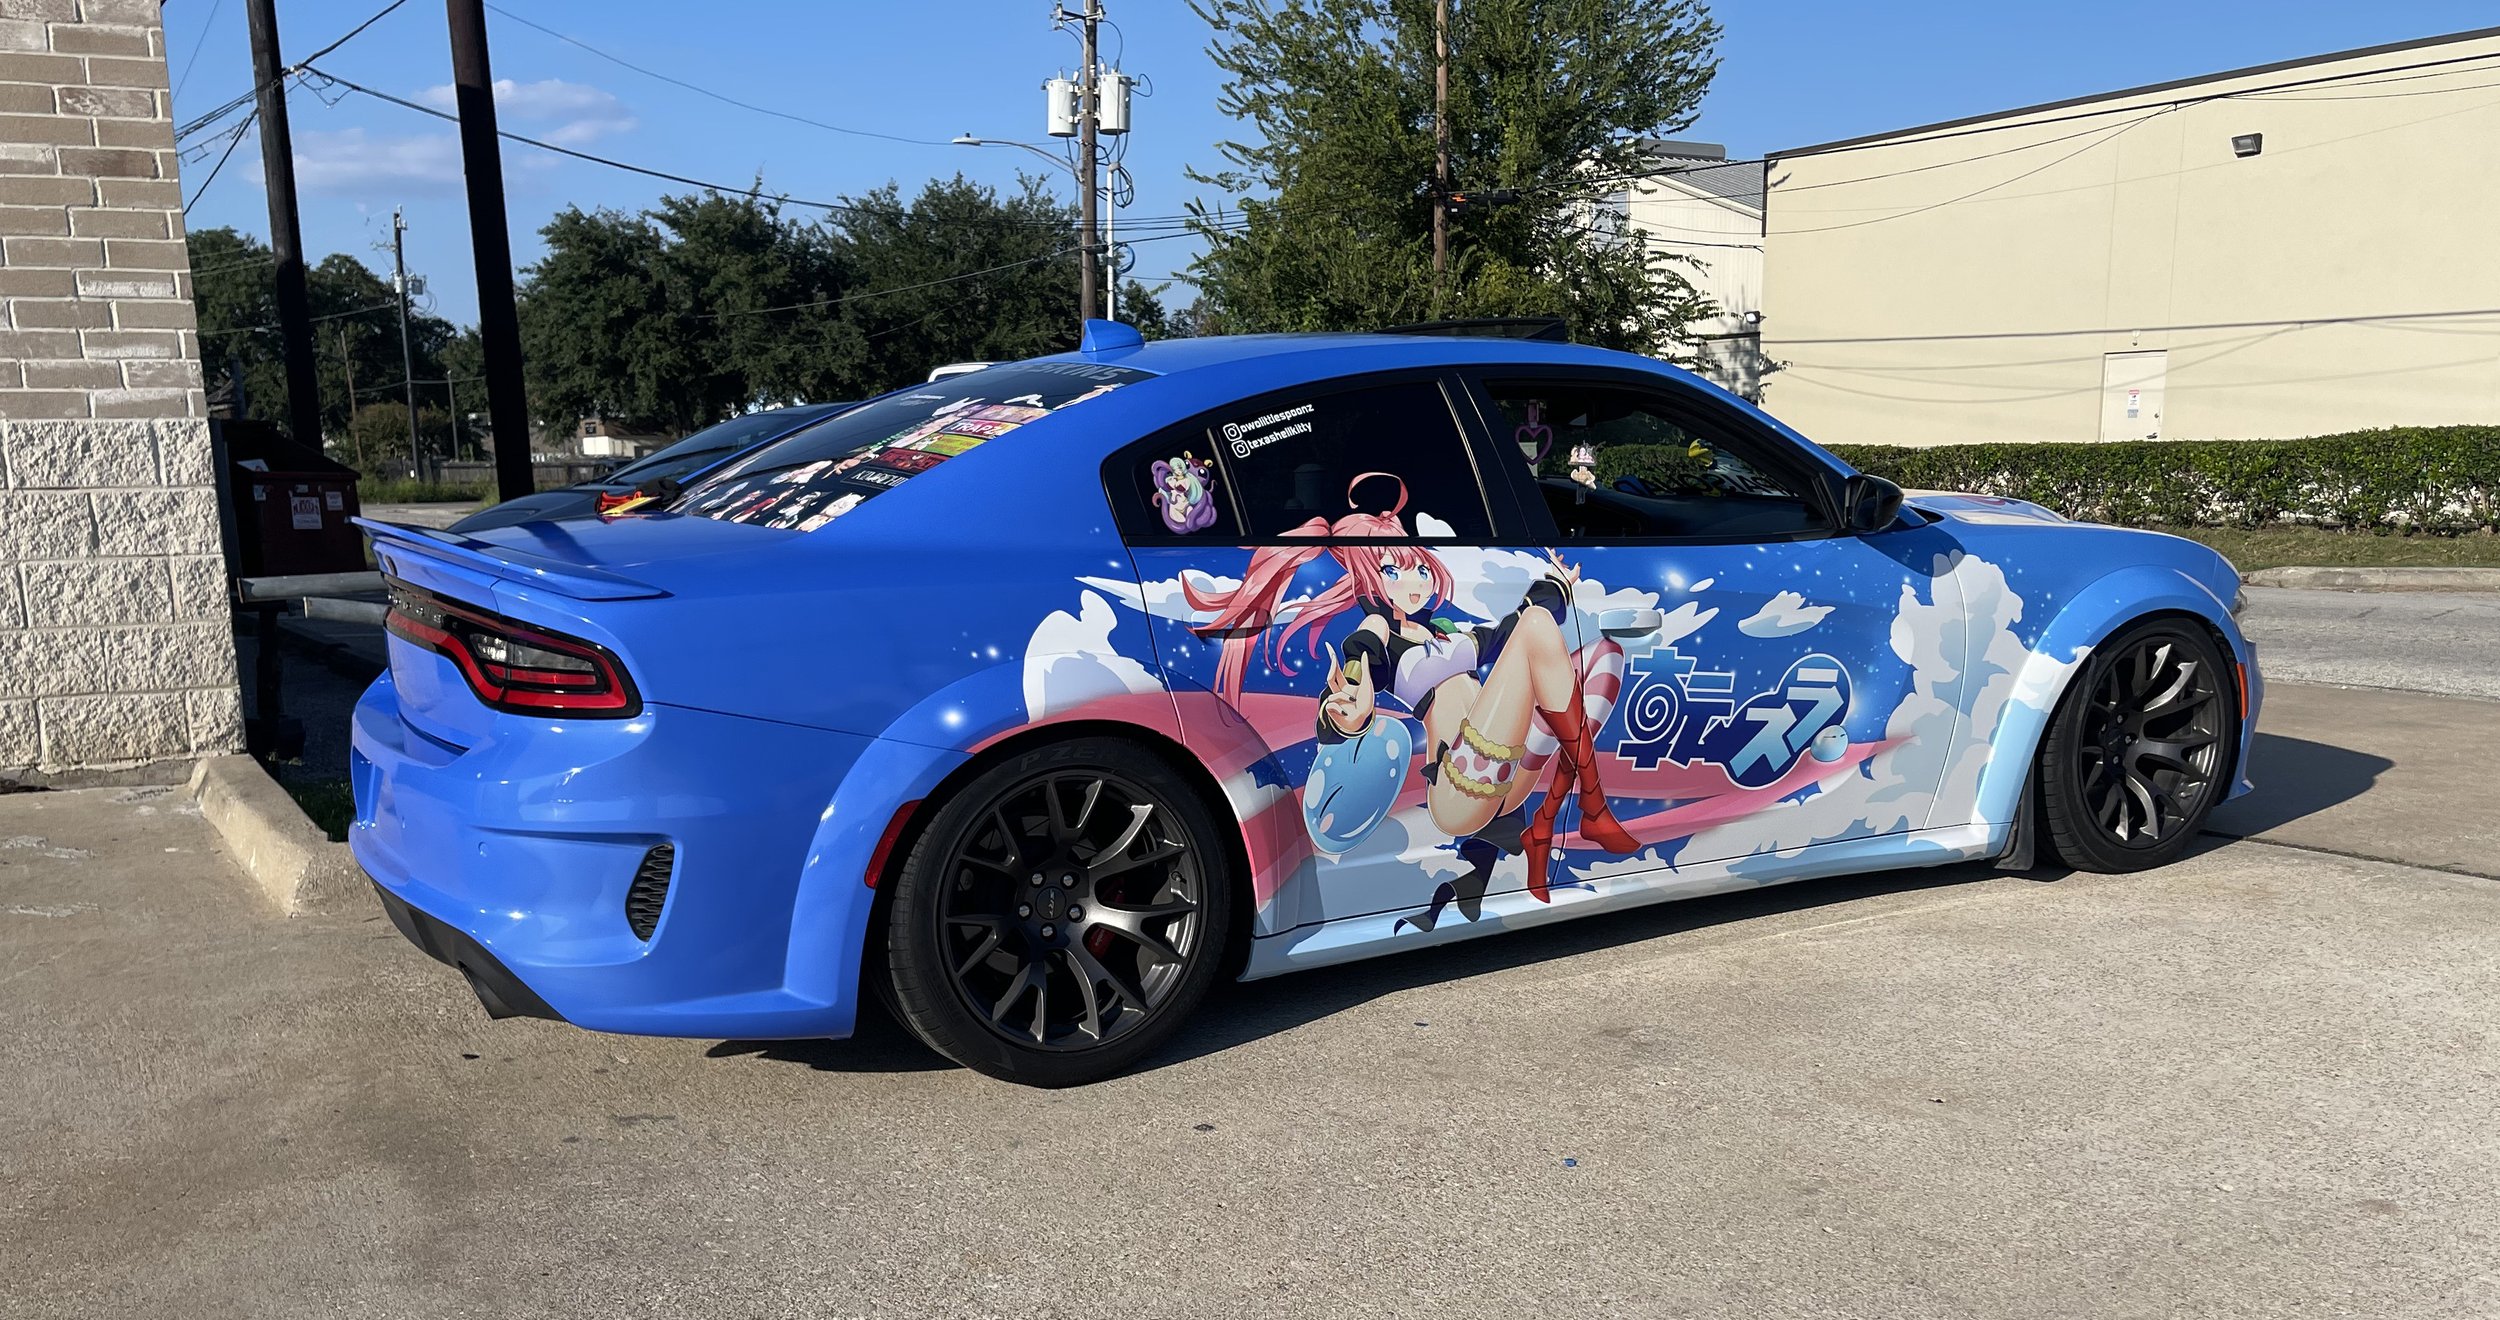 Amazon.com - PillowFigtArt Sexy Anime car wrap, Sexy Anime car Graphics, Anime  car Decal, Anime car Sticker, Anime Side car Decal, Anime Full Color car  Vinyl, Anime car wrap vmcc008 (25